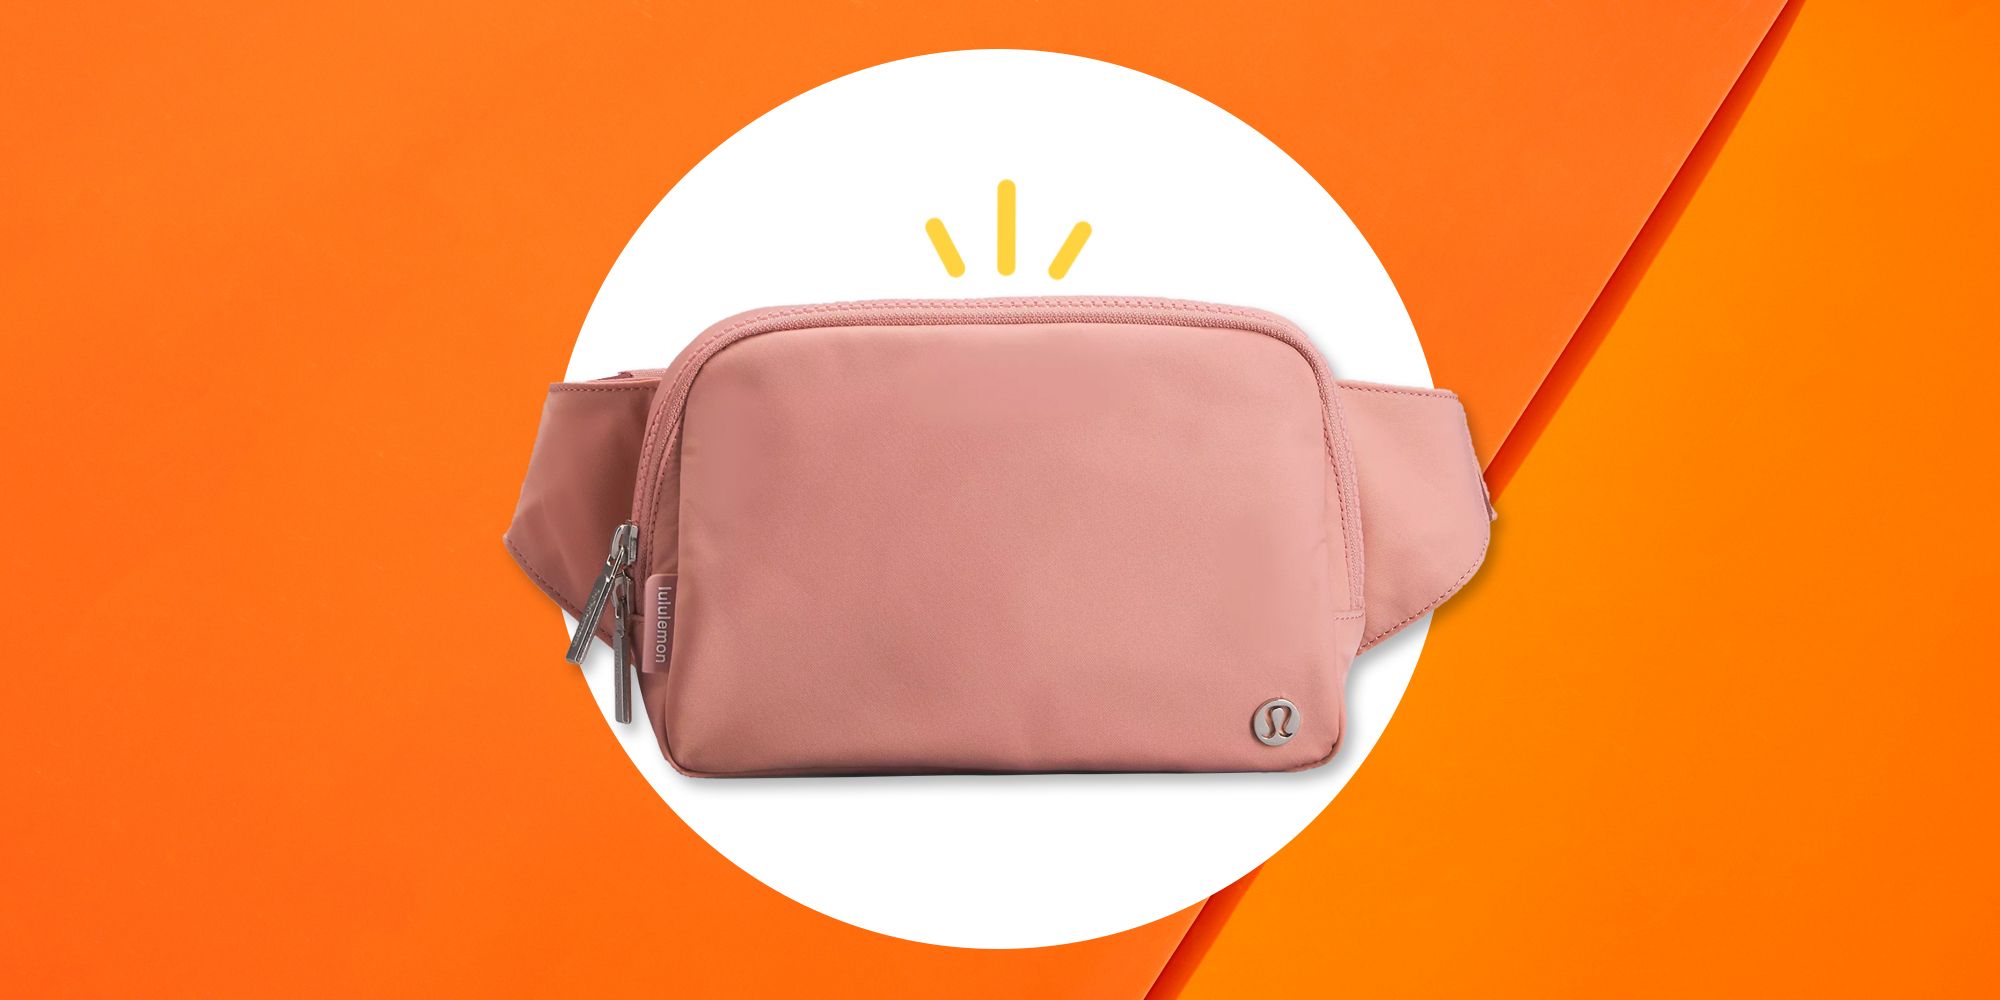 Lululemon Everywhere Belt Bag in Pink Pastel - Women's handbags